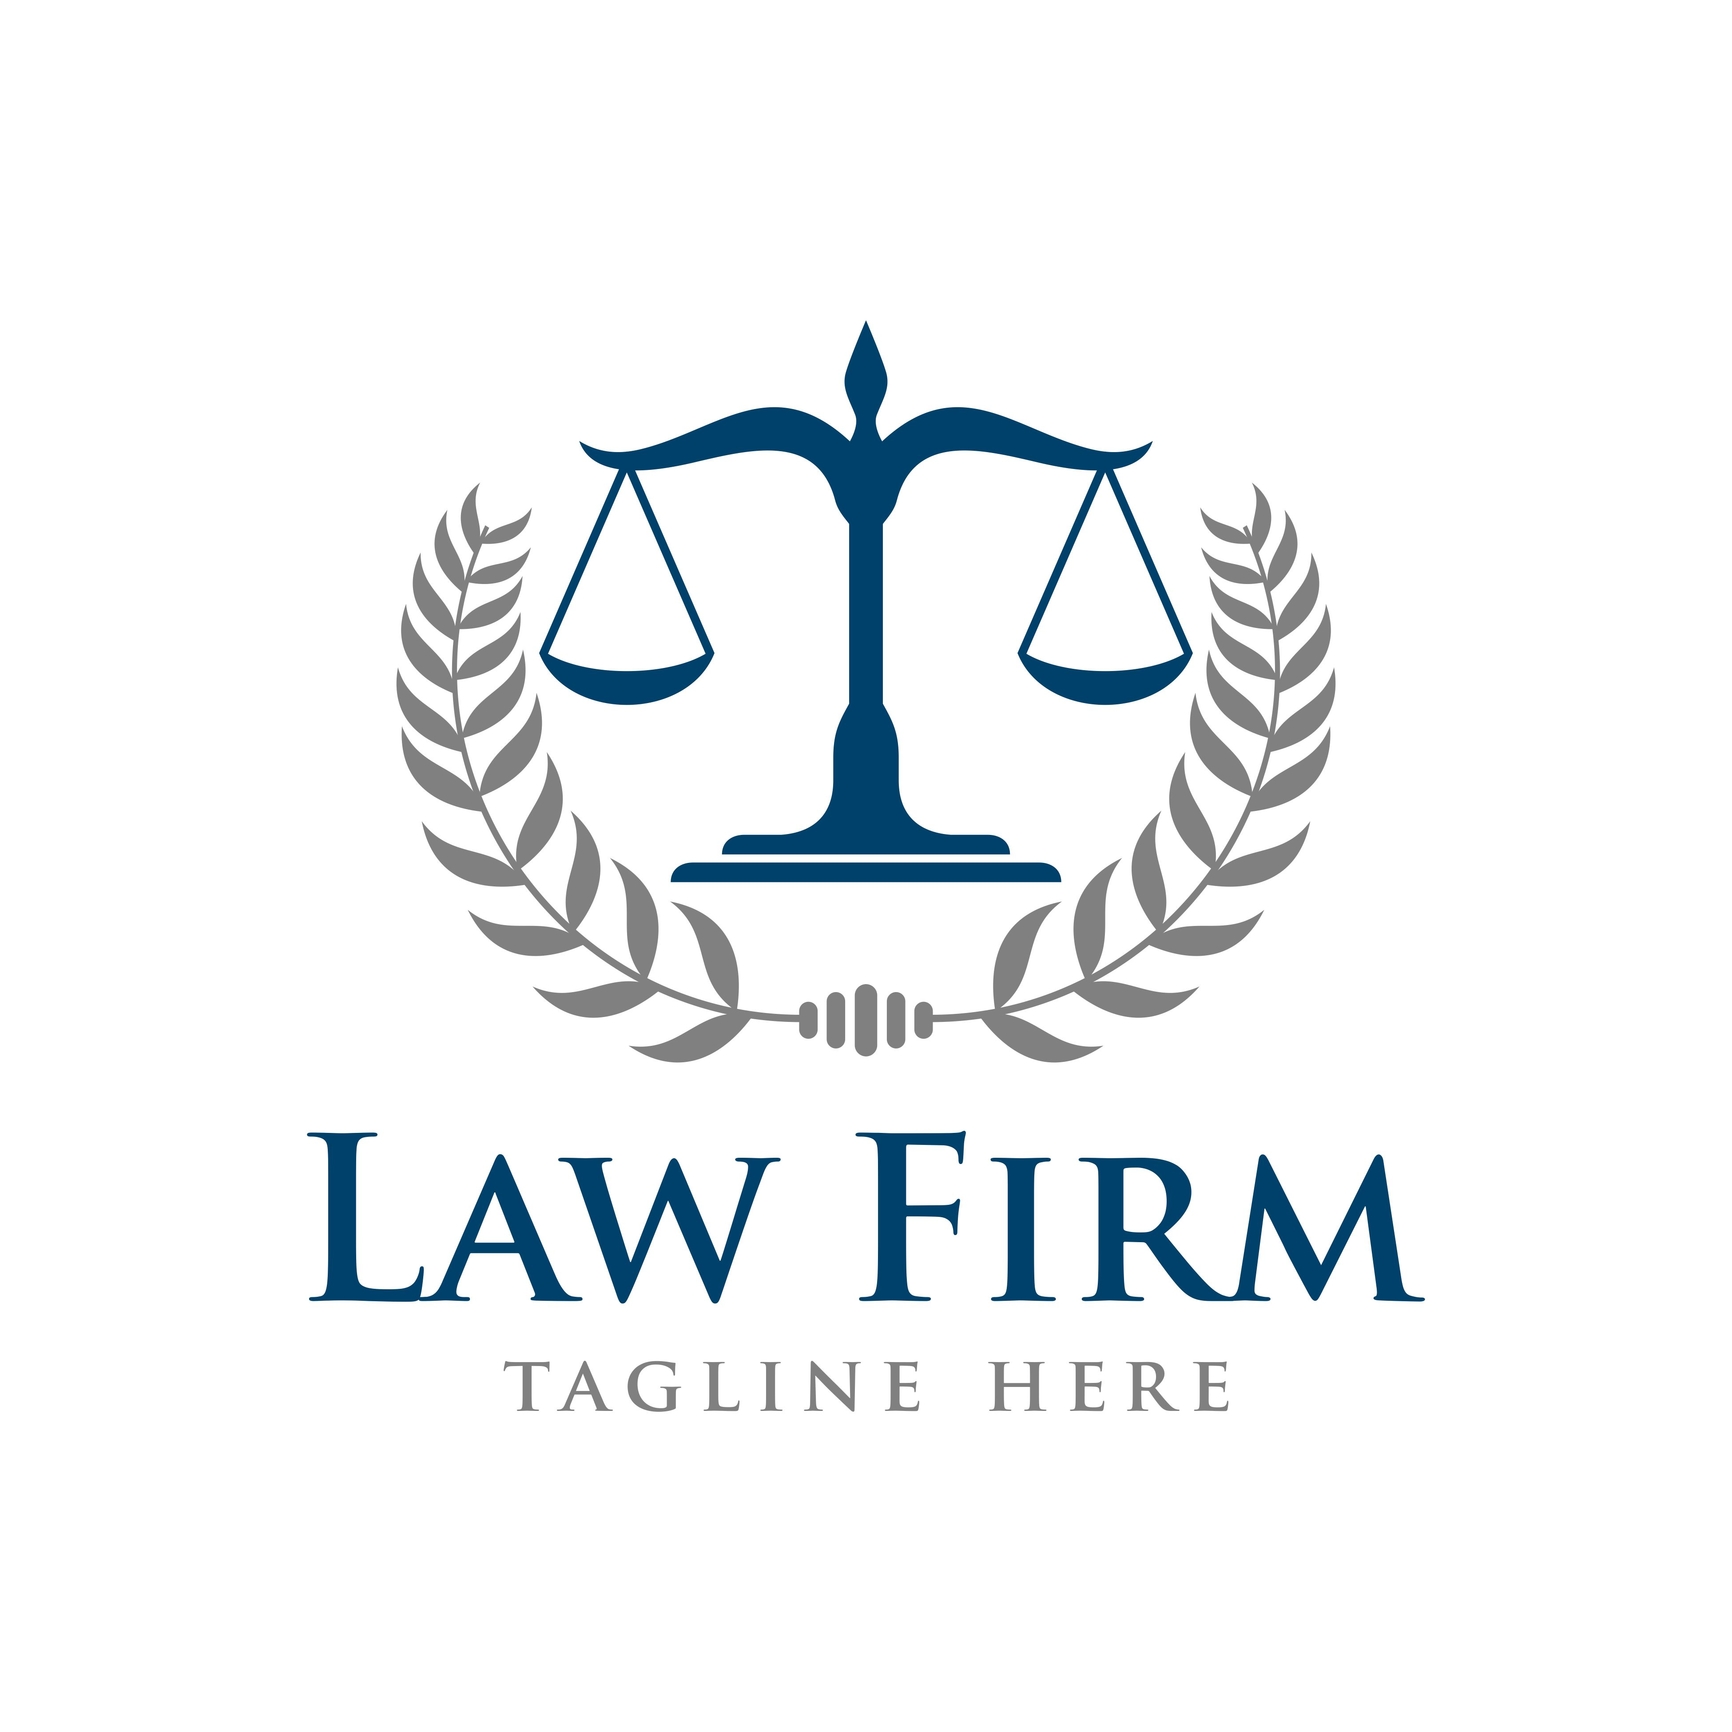 law firm logo ideas 1